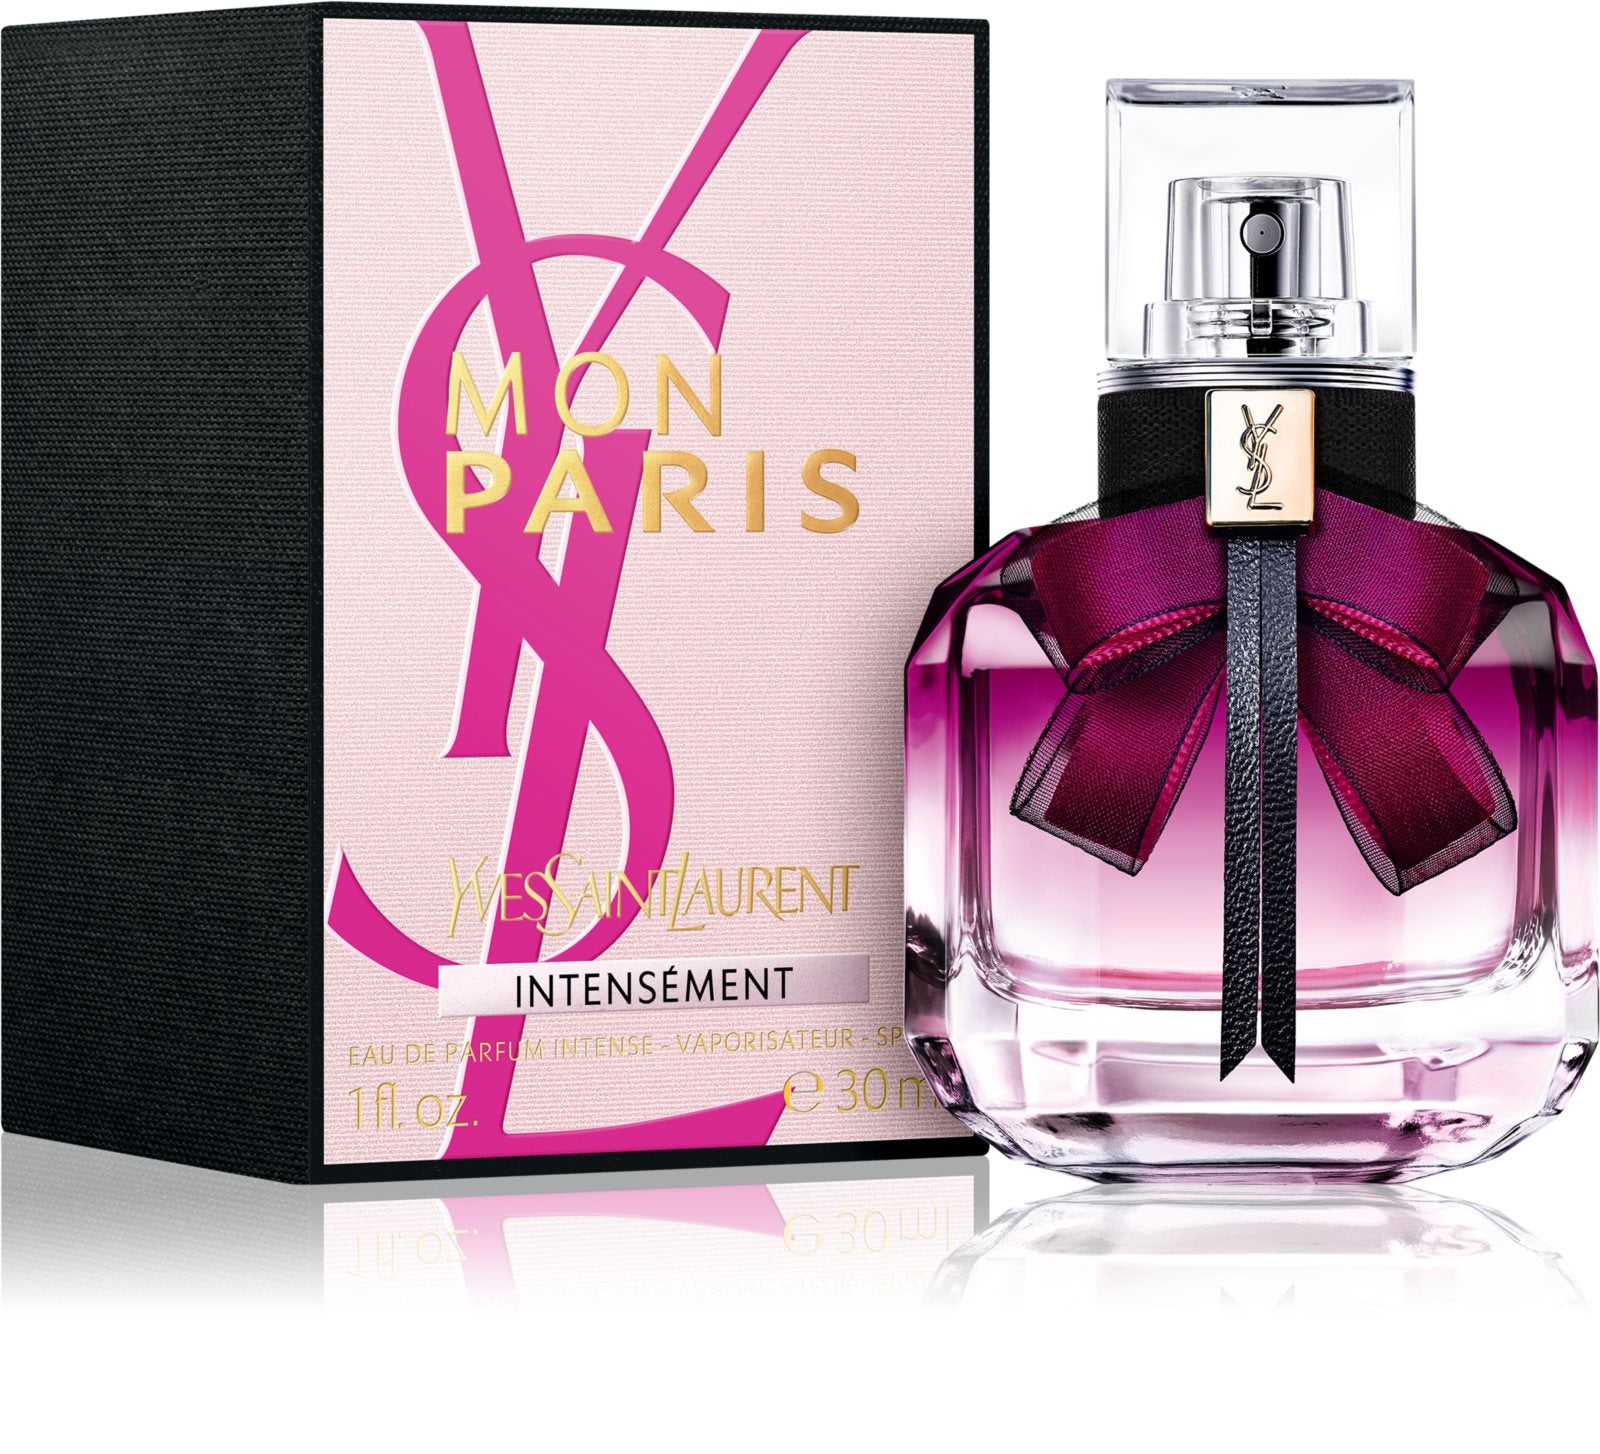 Yves Saint Laurent Mon Paris Intensément Eau de Parfum 30 ml – BS24  Switzerland AG